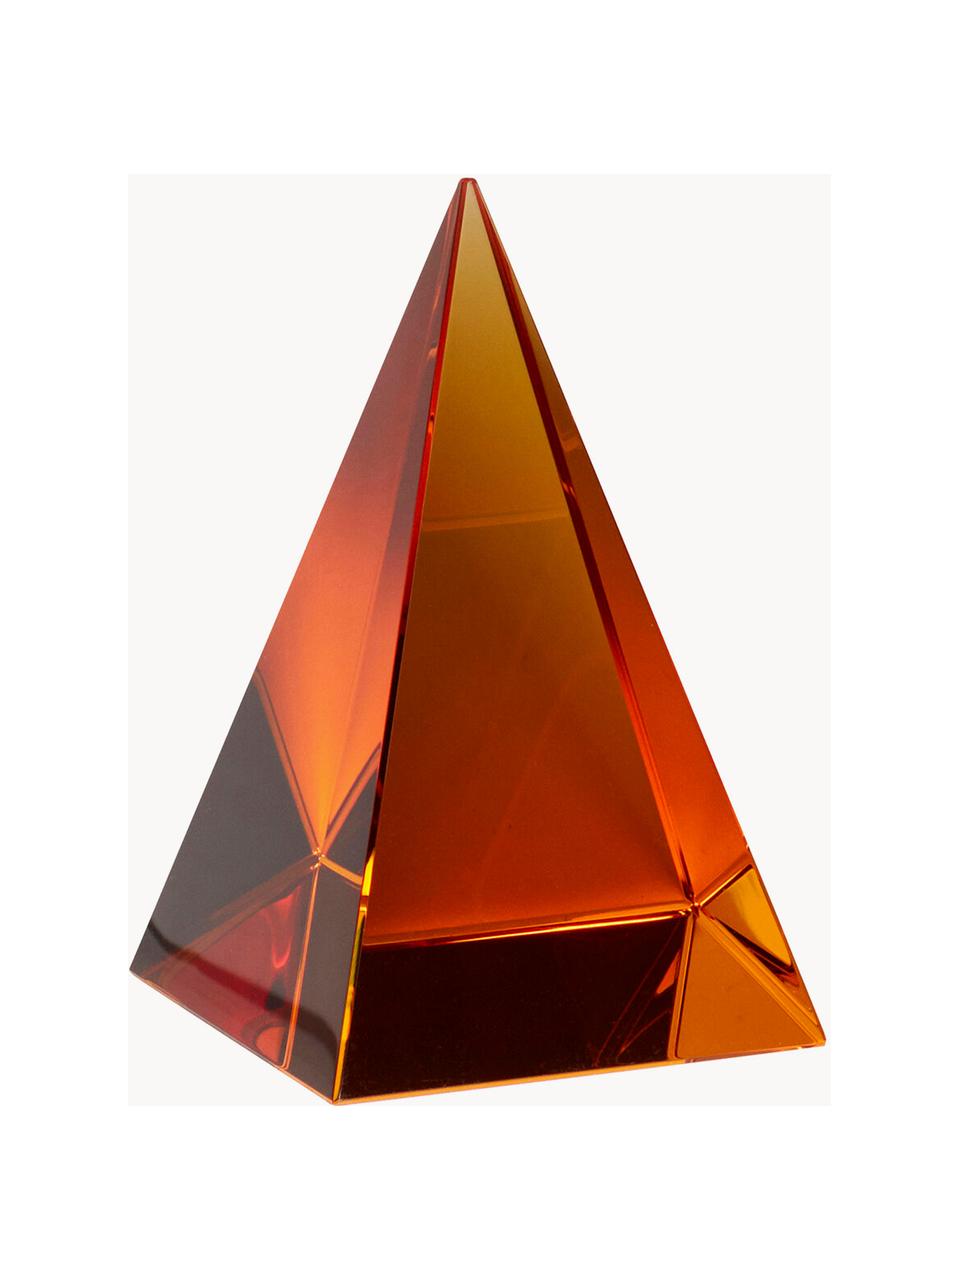 Ręcznie wykonana dekoracja ze szkła kryształowego Prism, Szkło kryształowe, Pomarańczowy, S 7 x W 10 cm